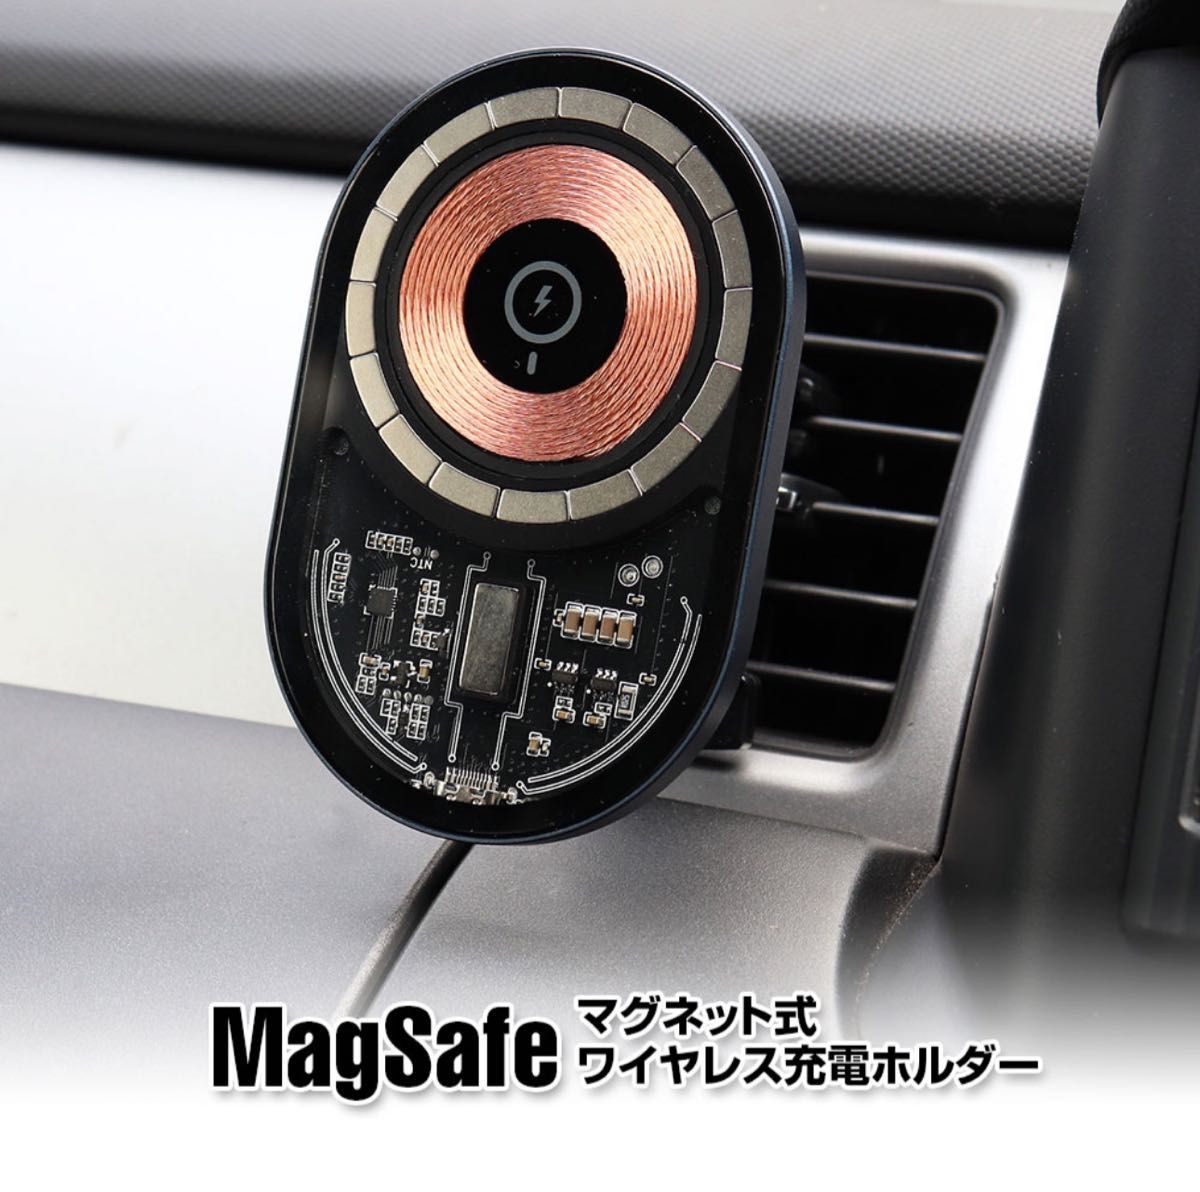 MagSafe 車載 エアコンルーバー取り付け ホルダー 充電器